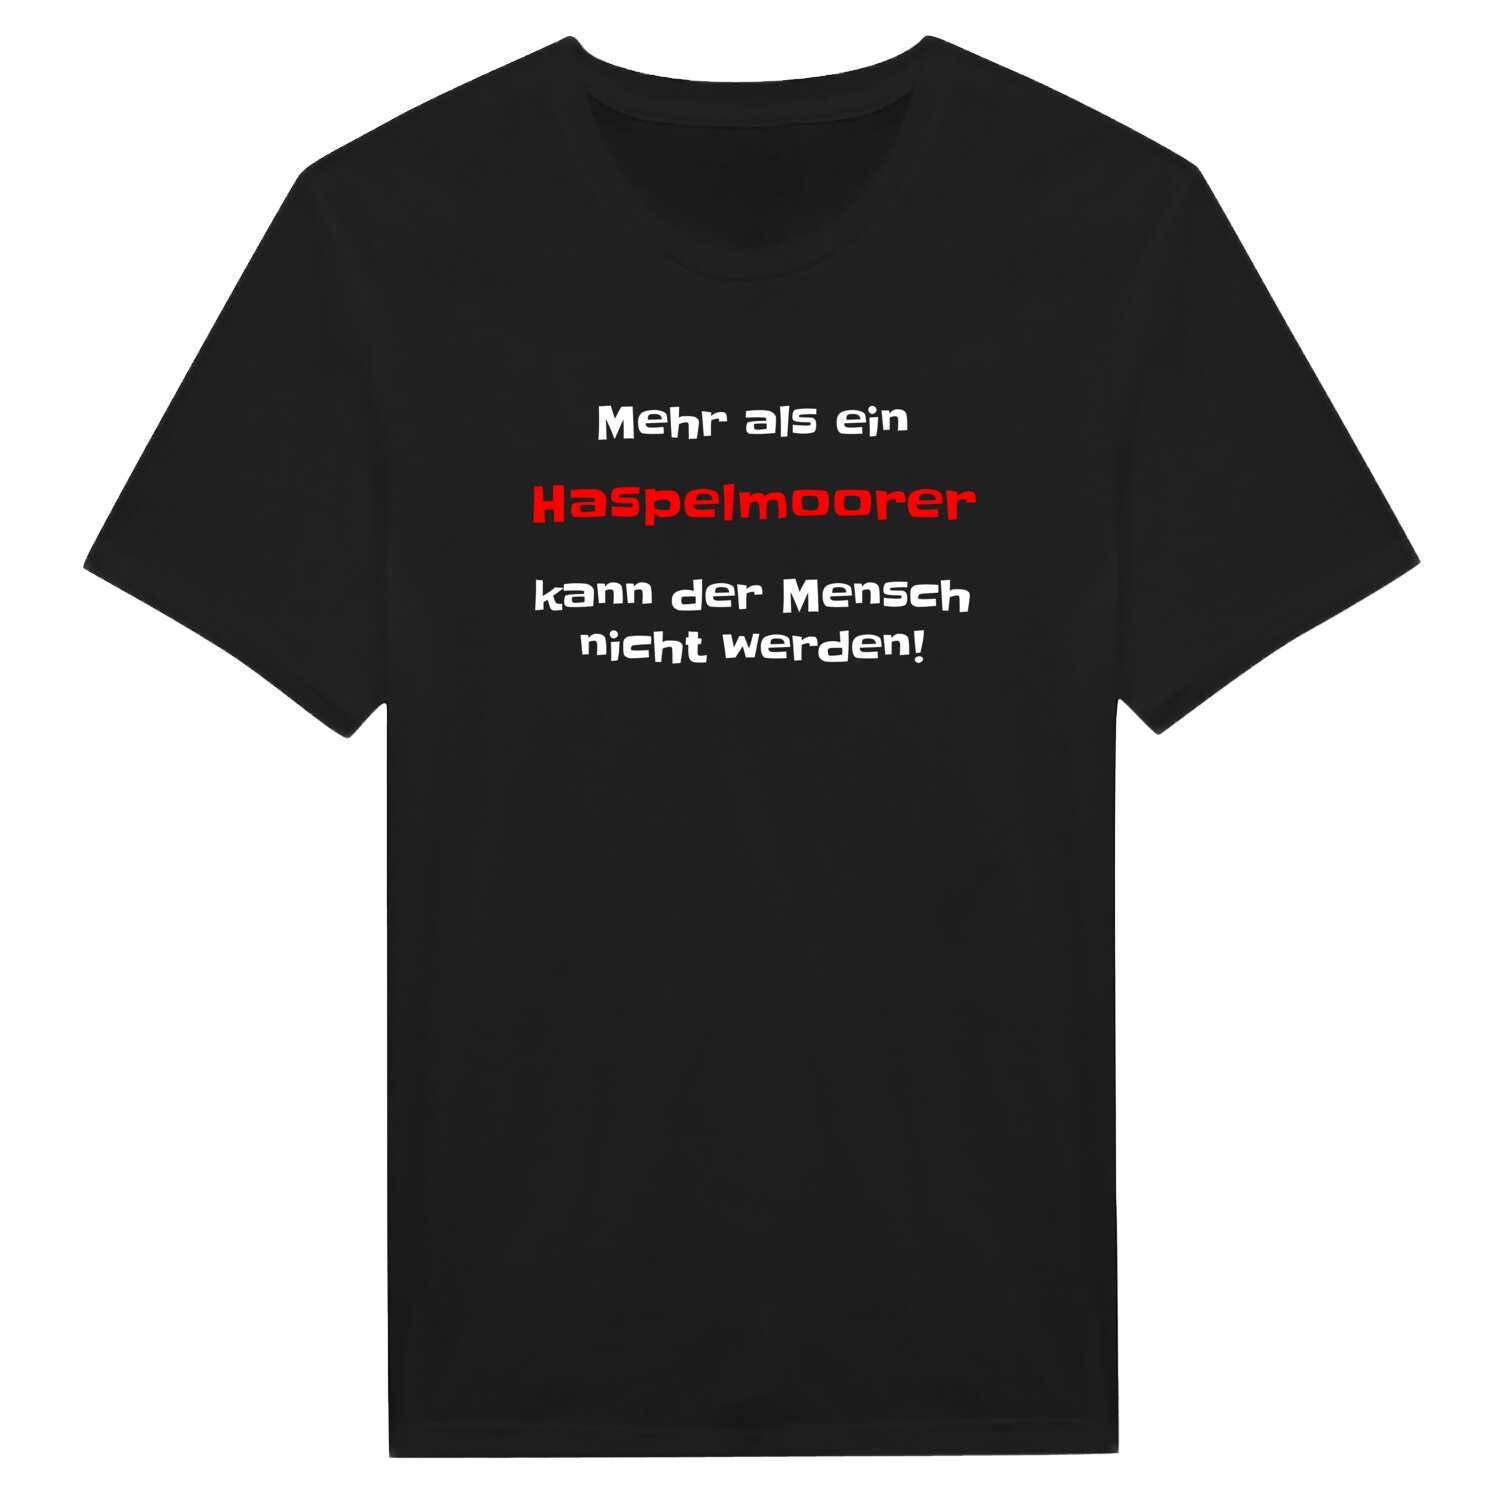 Haspelmoor T-Shirt »Mehr als ein«